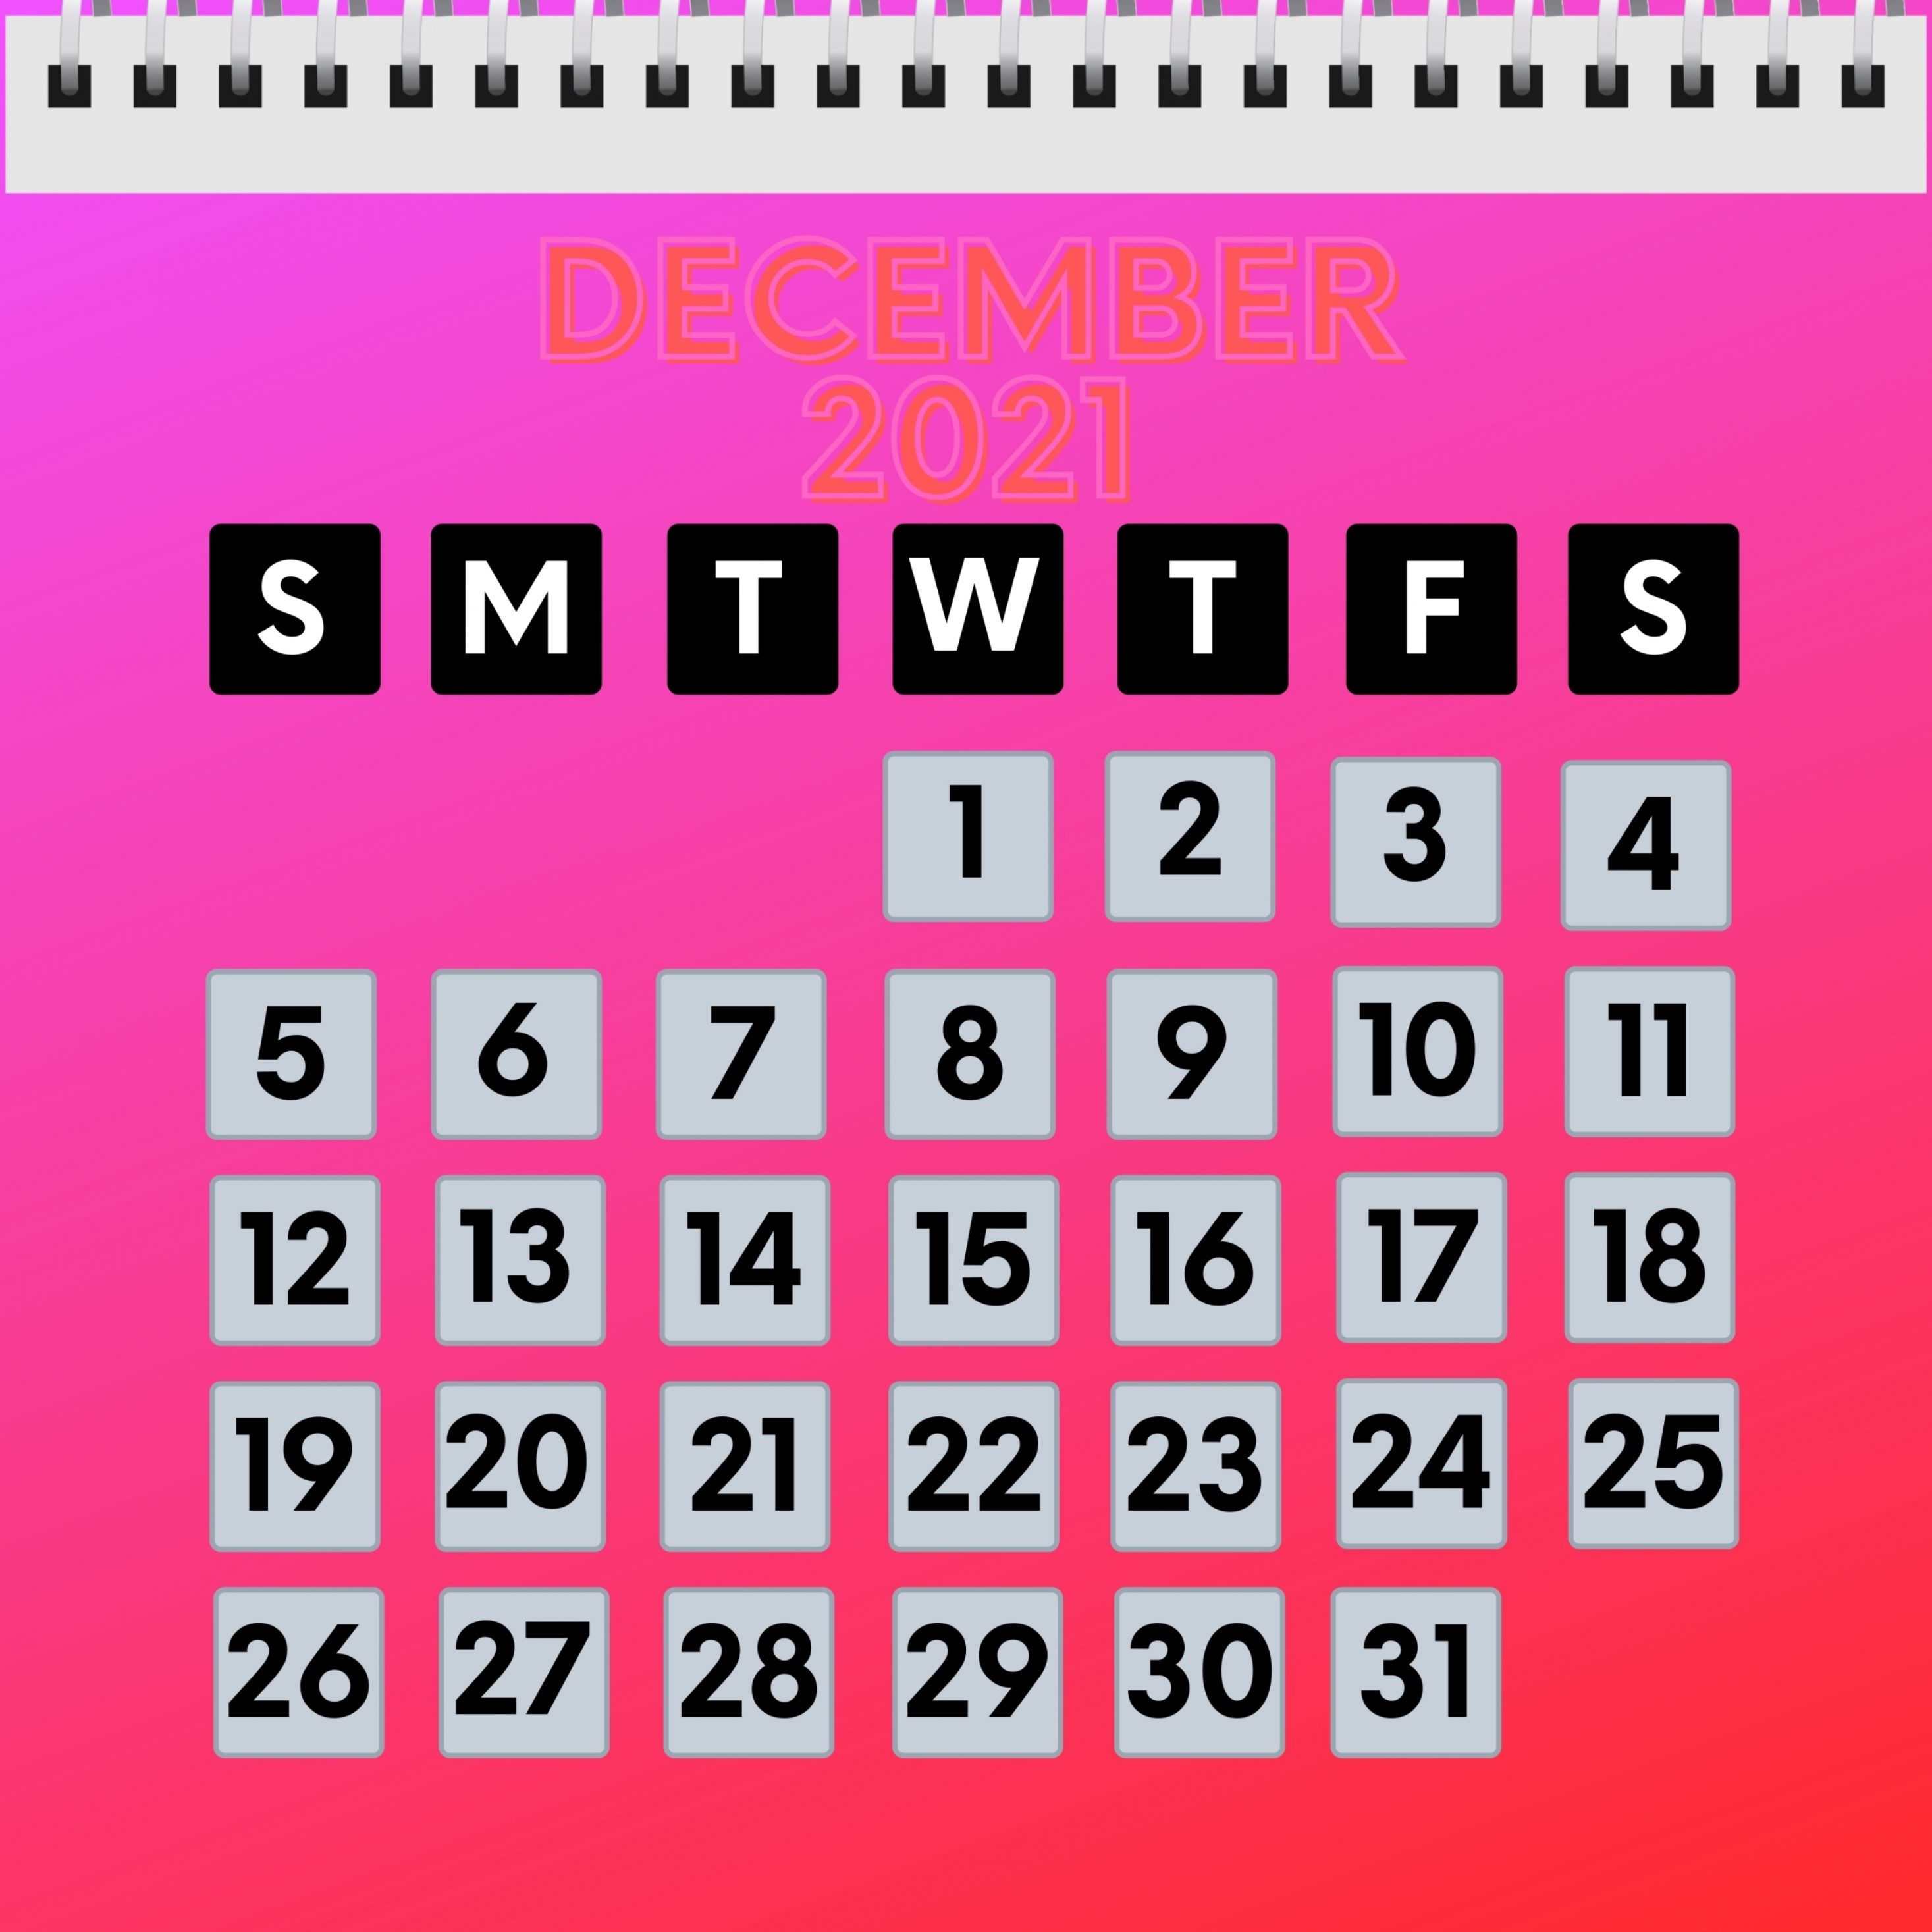 2934x2934 iOS iPad wallpaper 4k December 2021 Calendar iPad Wallpaper 2934x2934 pixels resolution